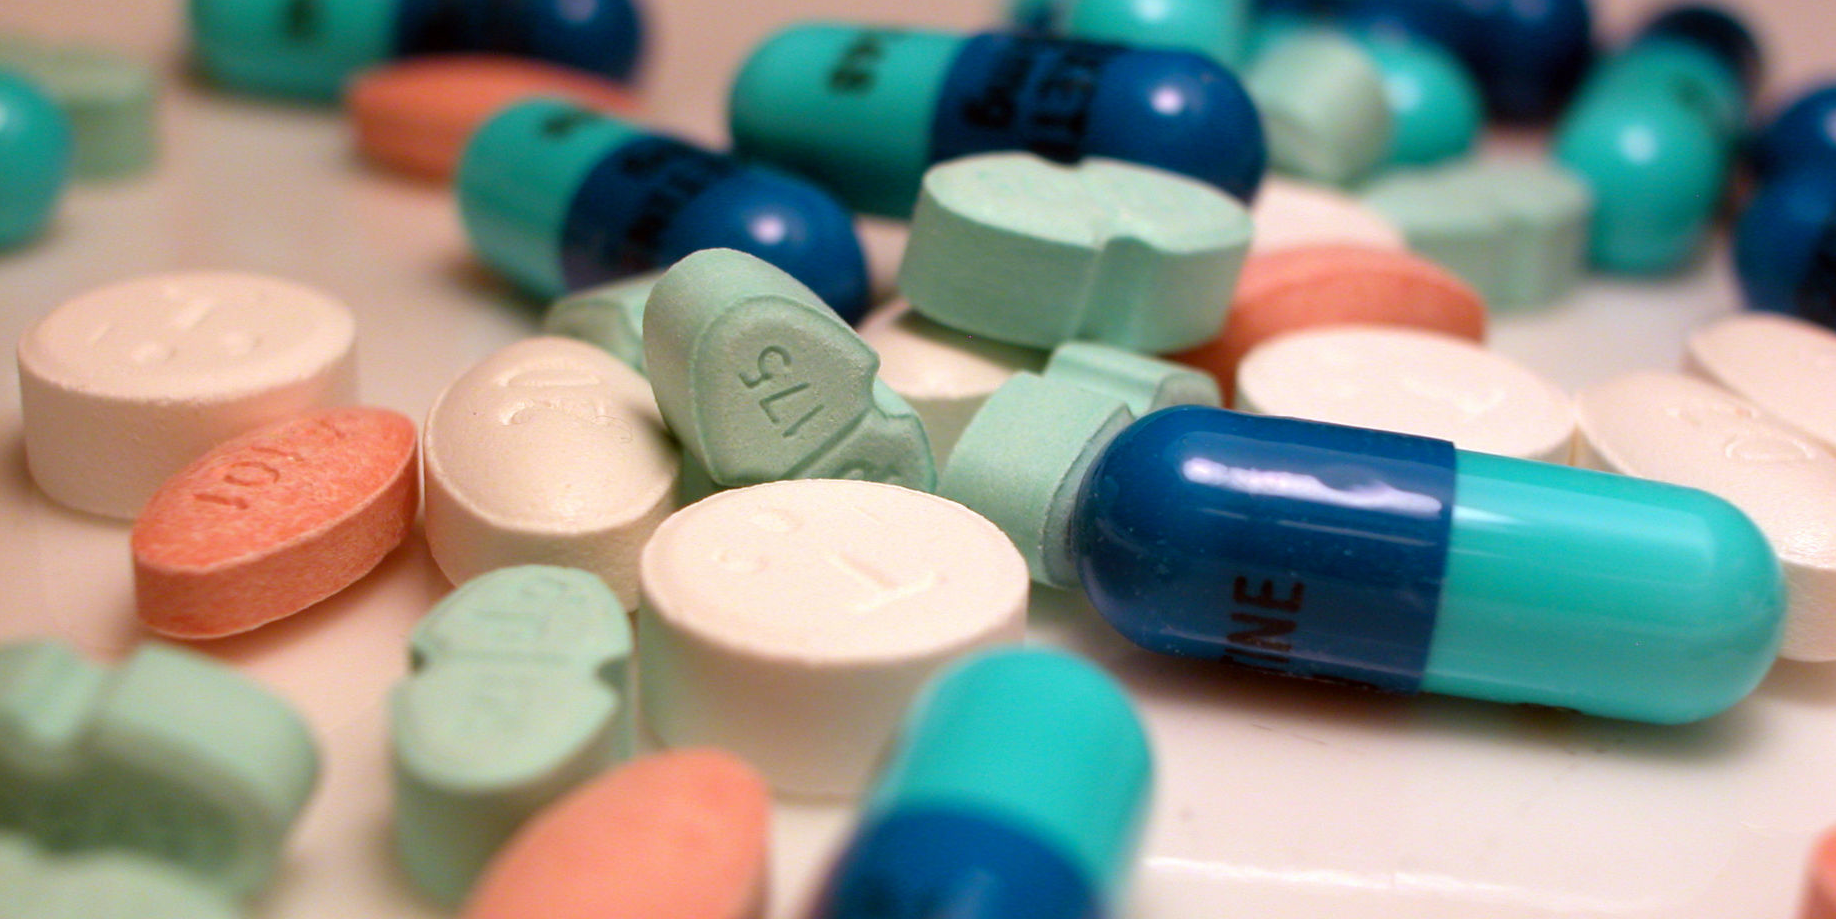 Médicaments: six génériques immédiatement retirés du marché pour cause d'efficacité mal évaluée